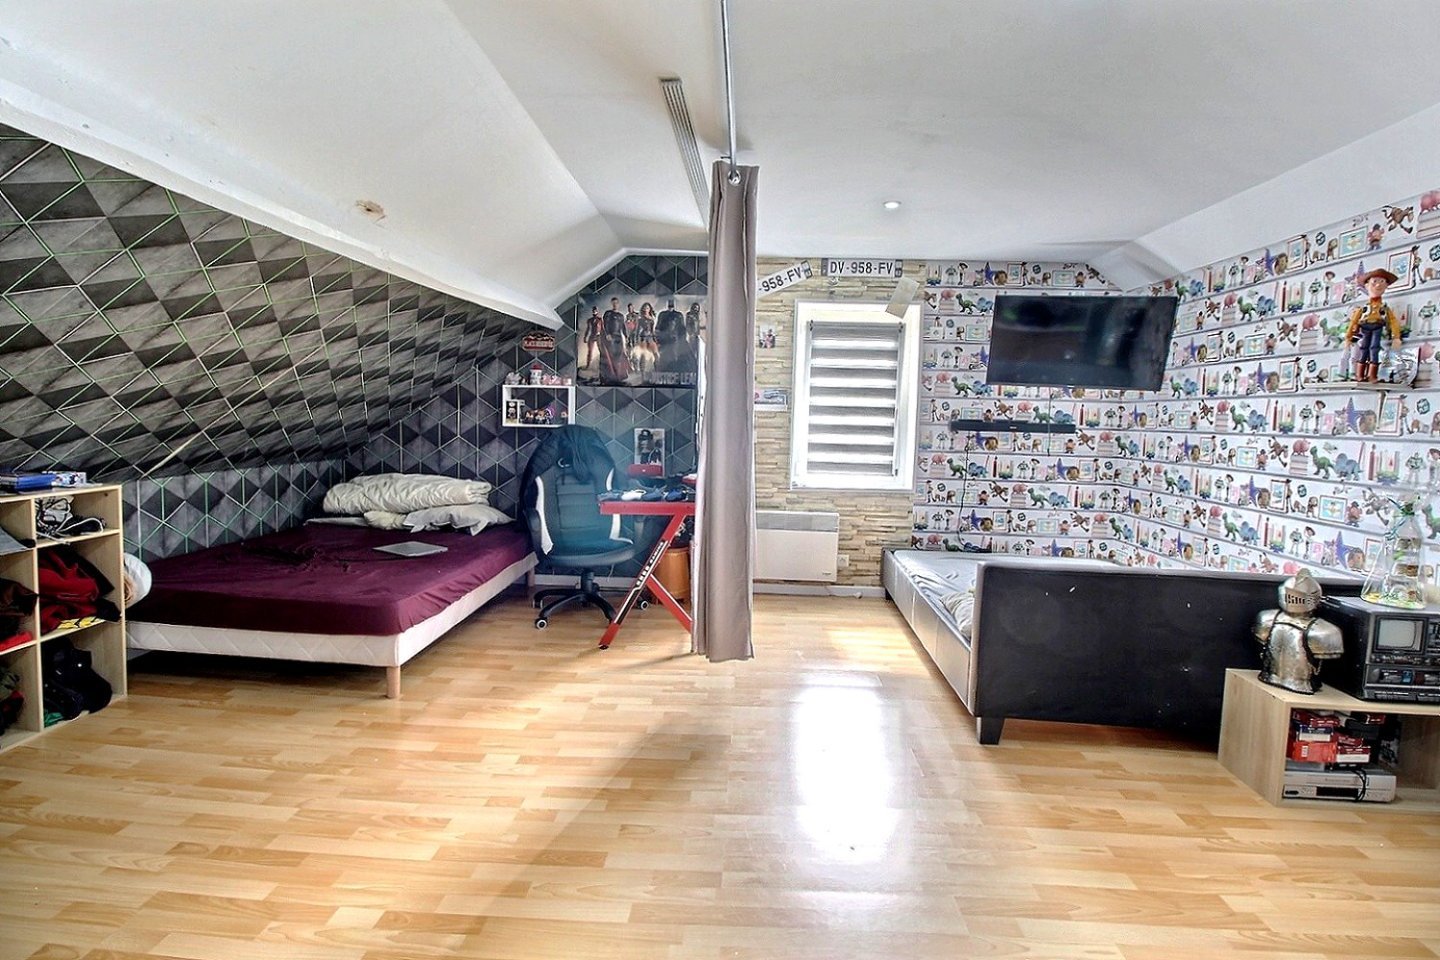 maison 3 chambres jardin garage double A VENDRE - AUCHY LES MINES - 116,95 m2 - 251 900 €